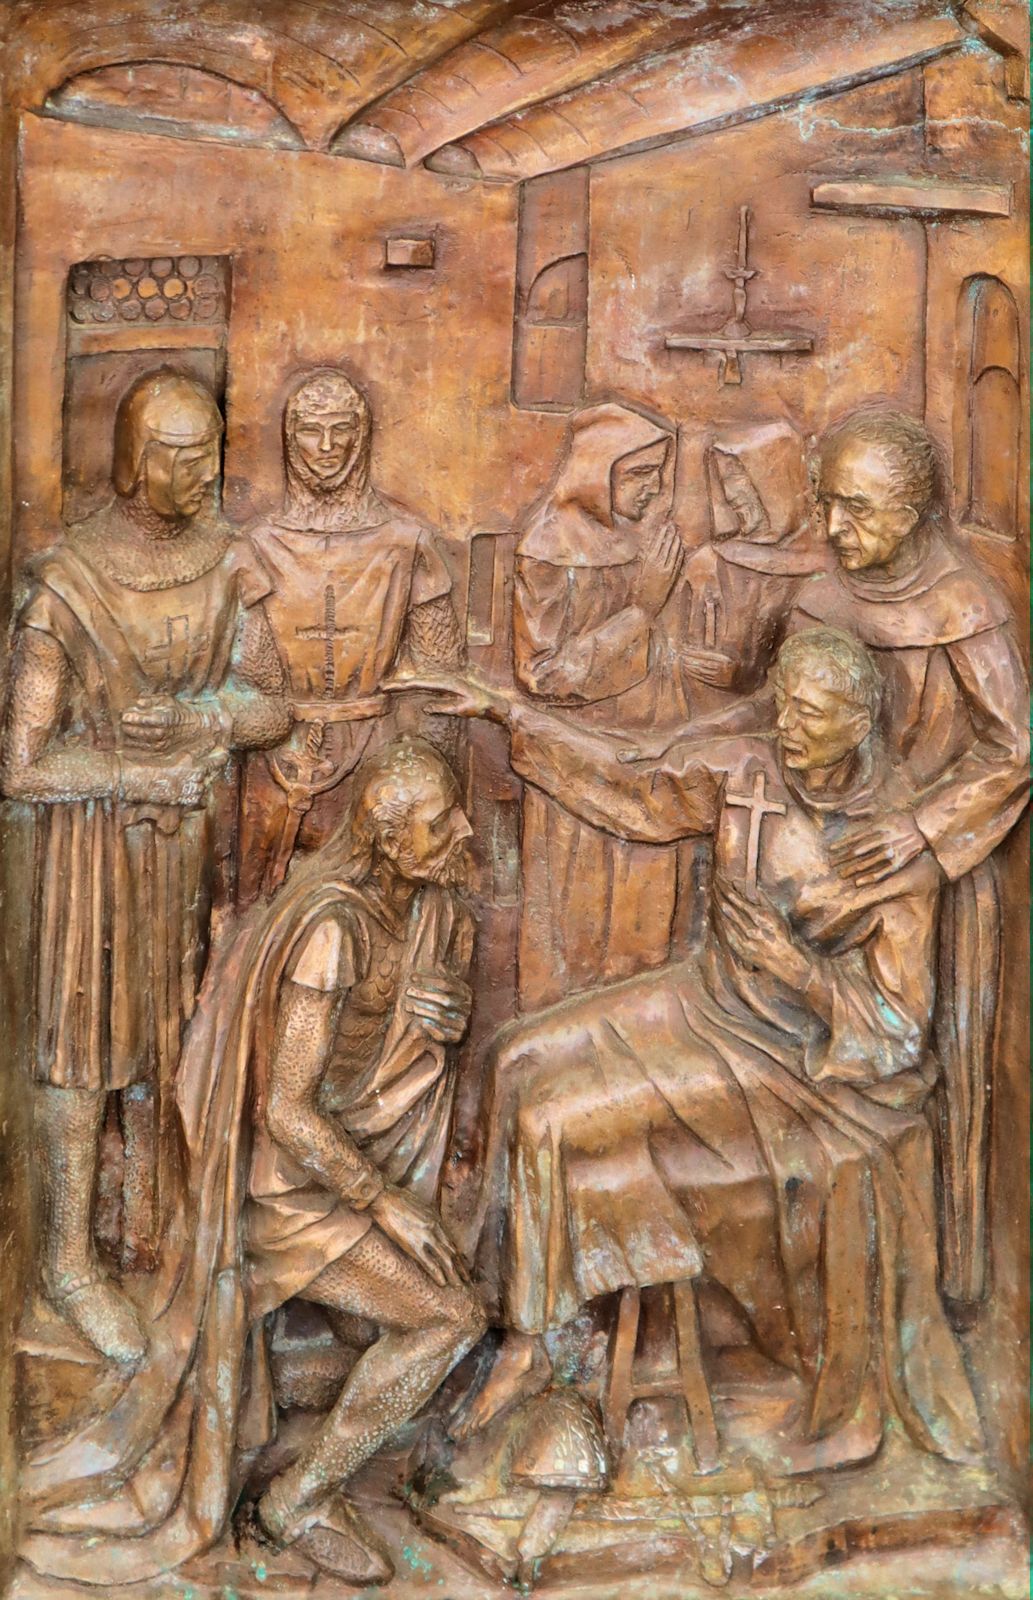 der sterbende Johannes segnet, Bronzerelief am Portal der Franziskanerkirche in Capestrano